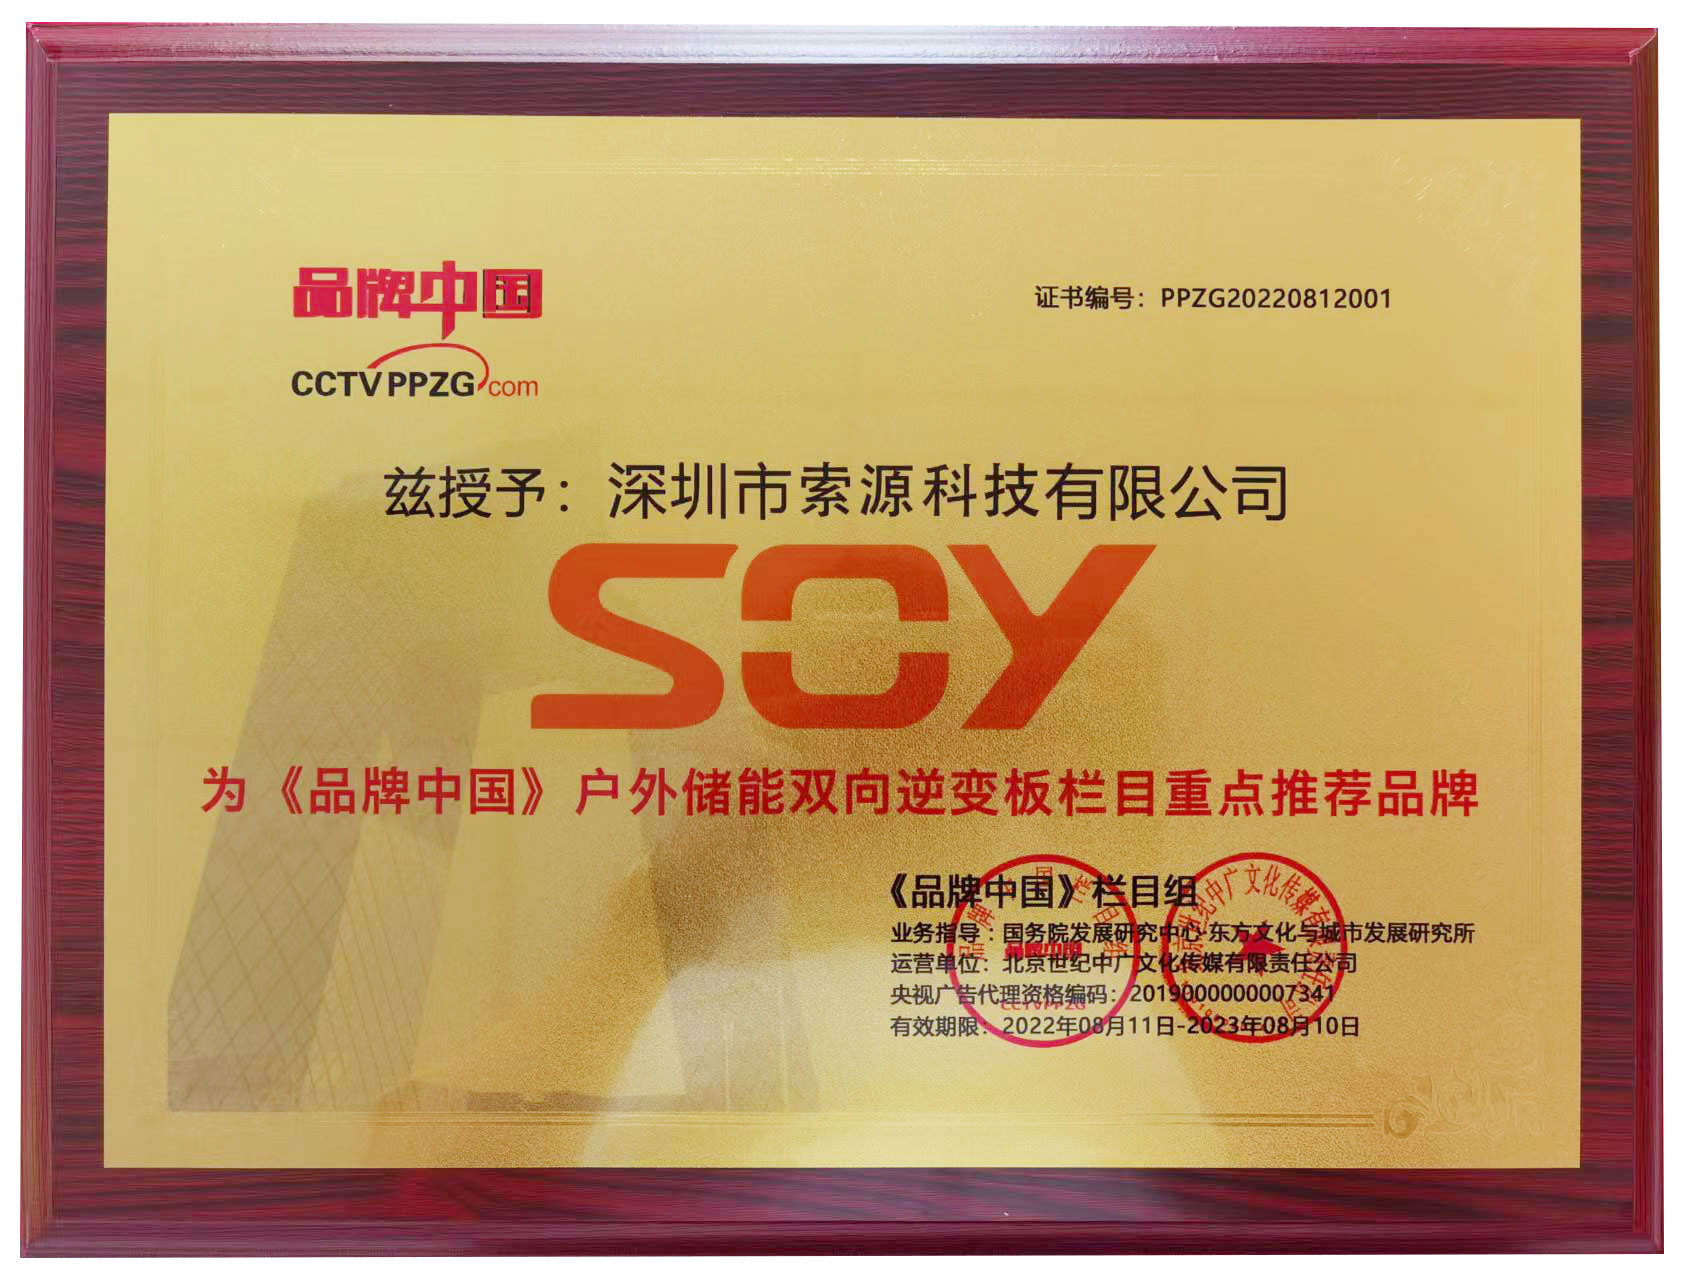 喜訊-索源科技SOY品牌獲得《品牌中國》欄目重點推薦